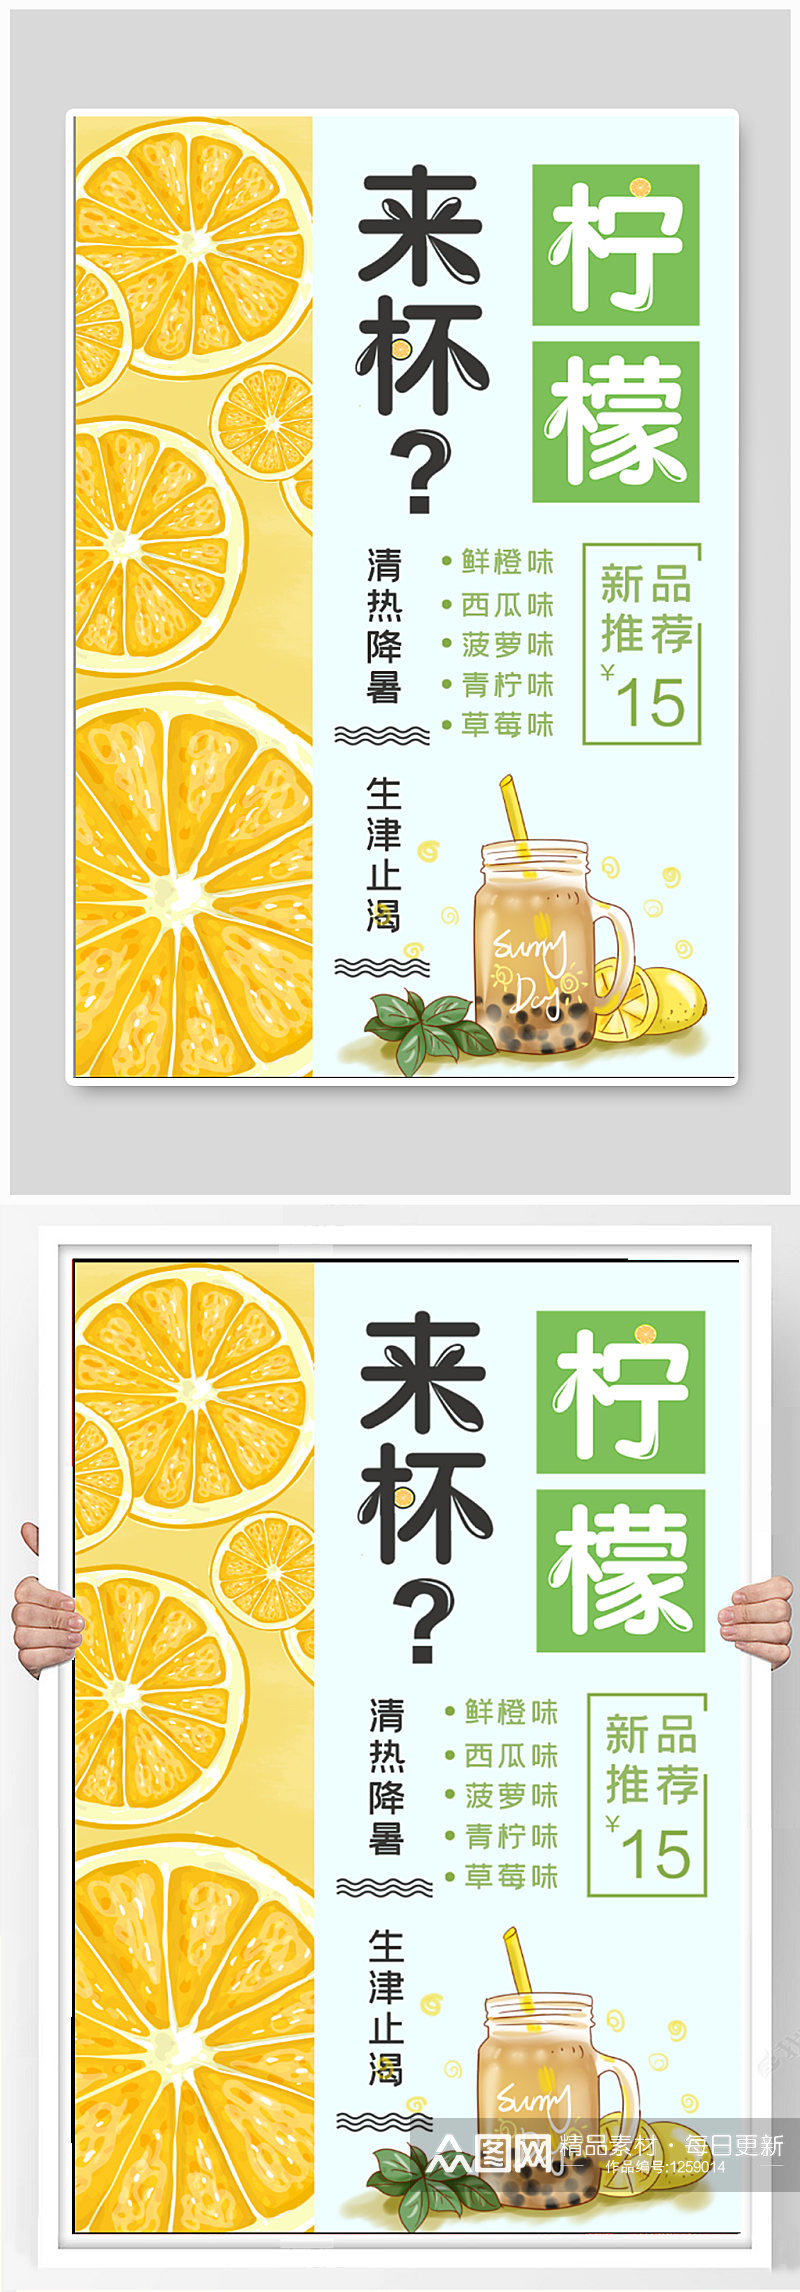 柠檬汁饮品店奶茶店海报素材